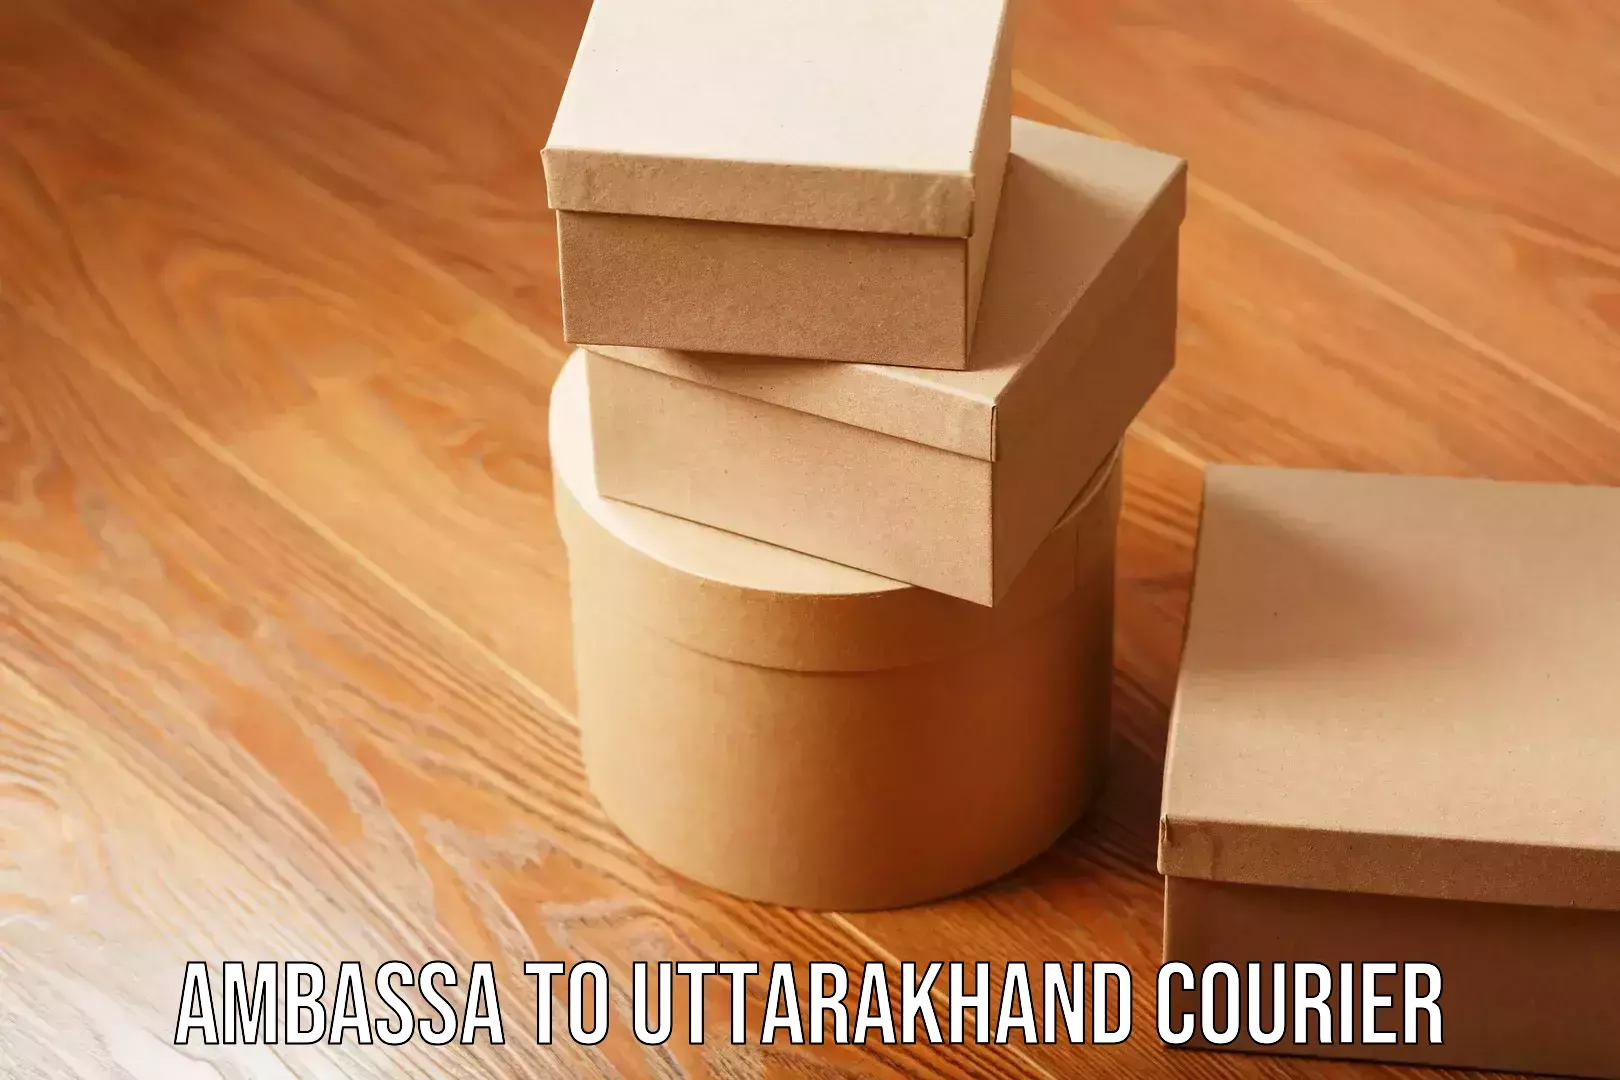 Personalized courier experiences Ambassa to Uttarakhand